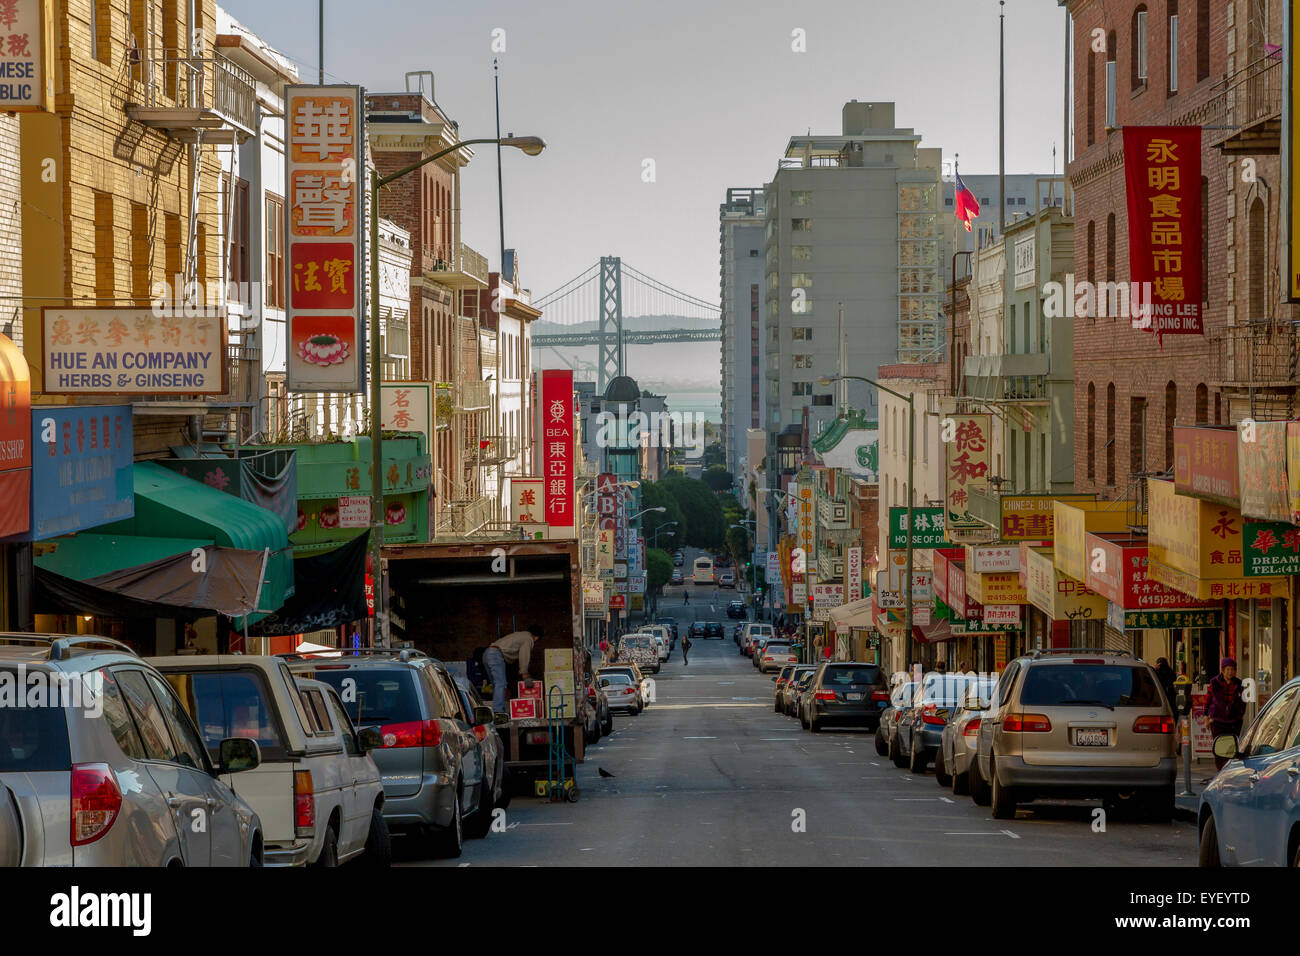 Ein Blick entlang der Washington St im Chinatown Viertel von San Francisco, mit der Oakland Bay Bridge in der Ferne, San Francisco California Stockfoto